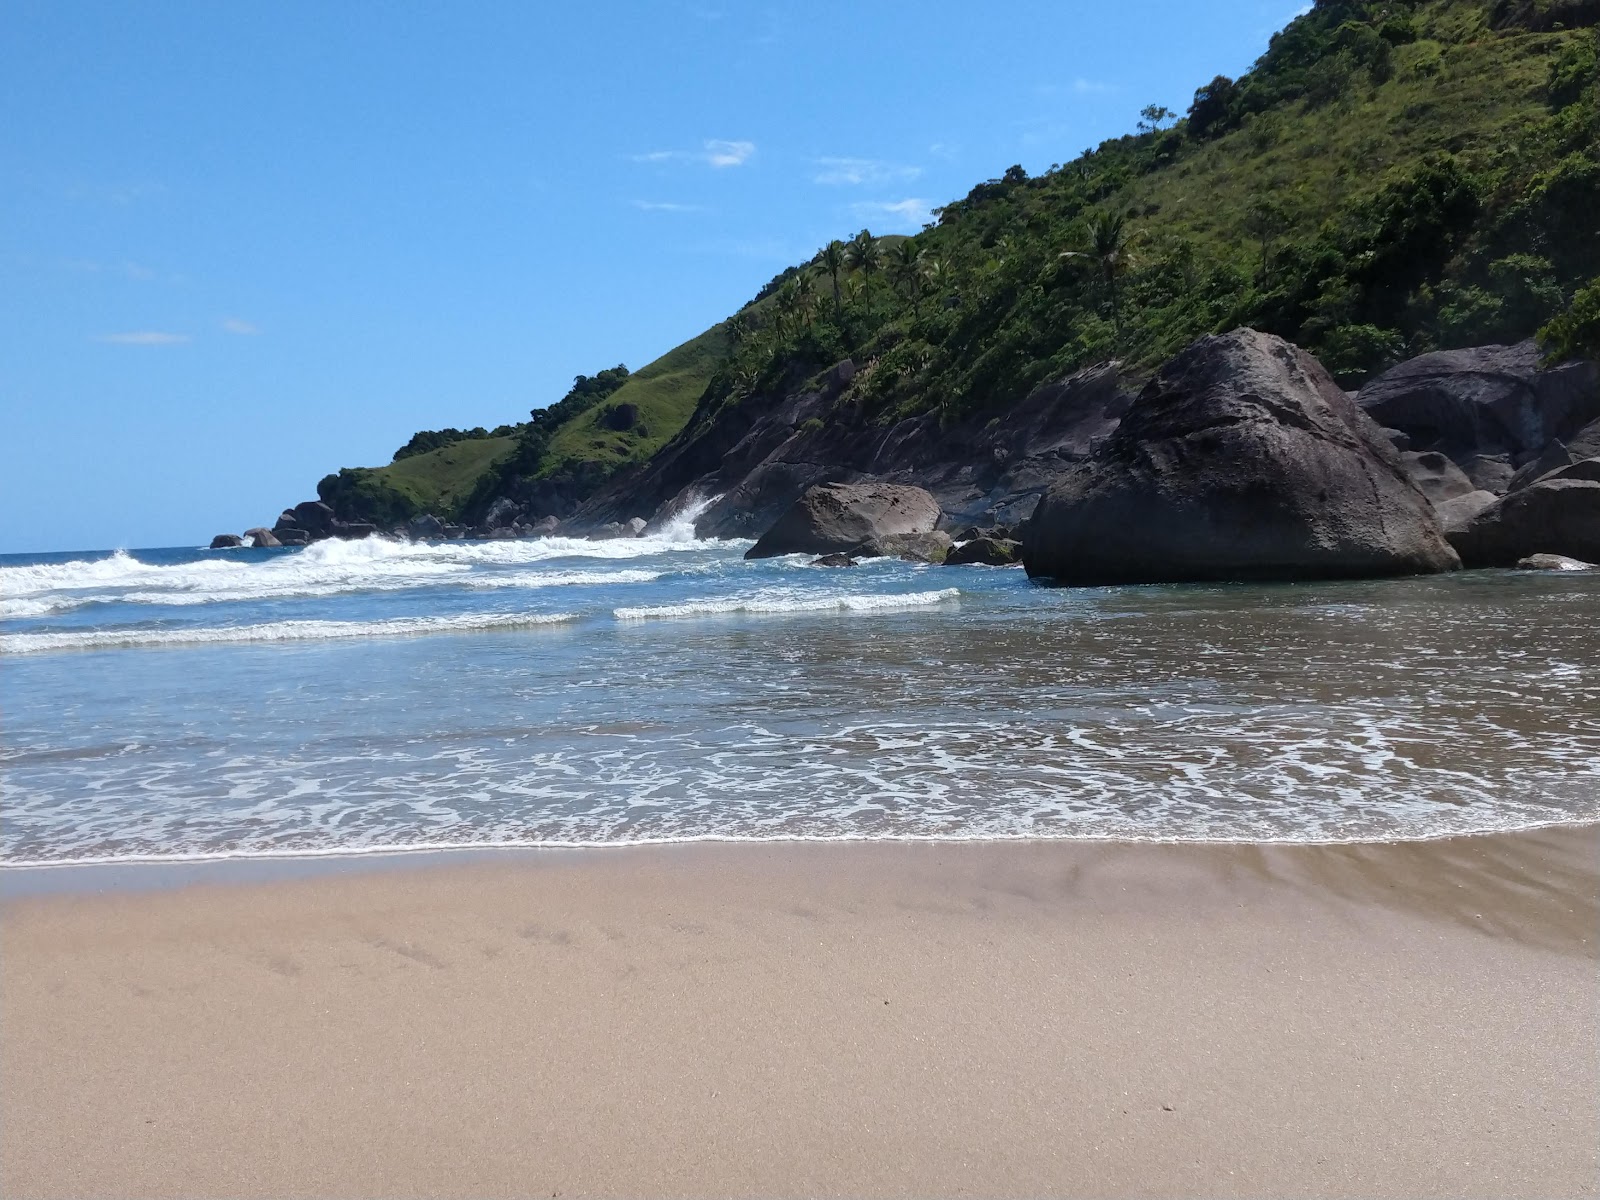 Fotografie cu Praia do Bonete sprijinit de stânci